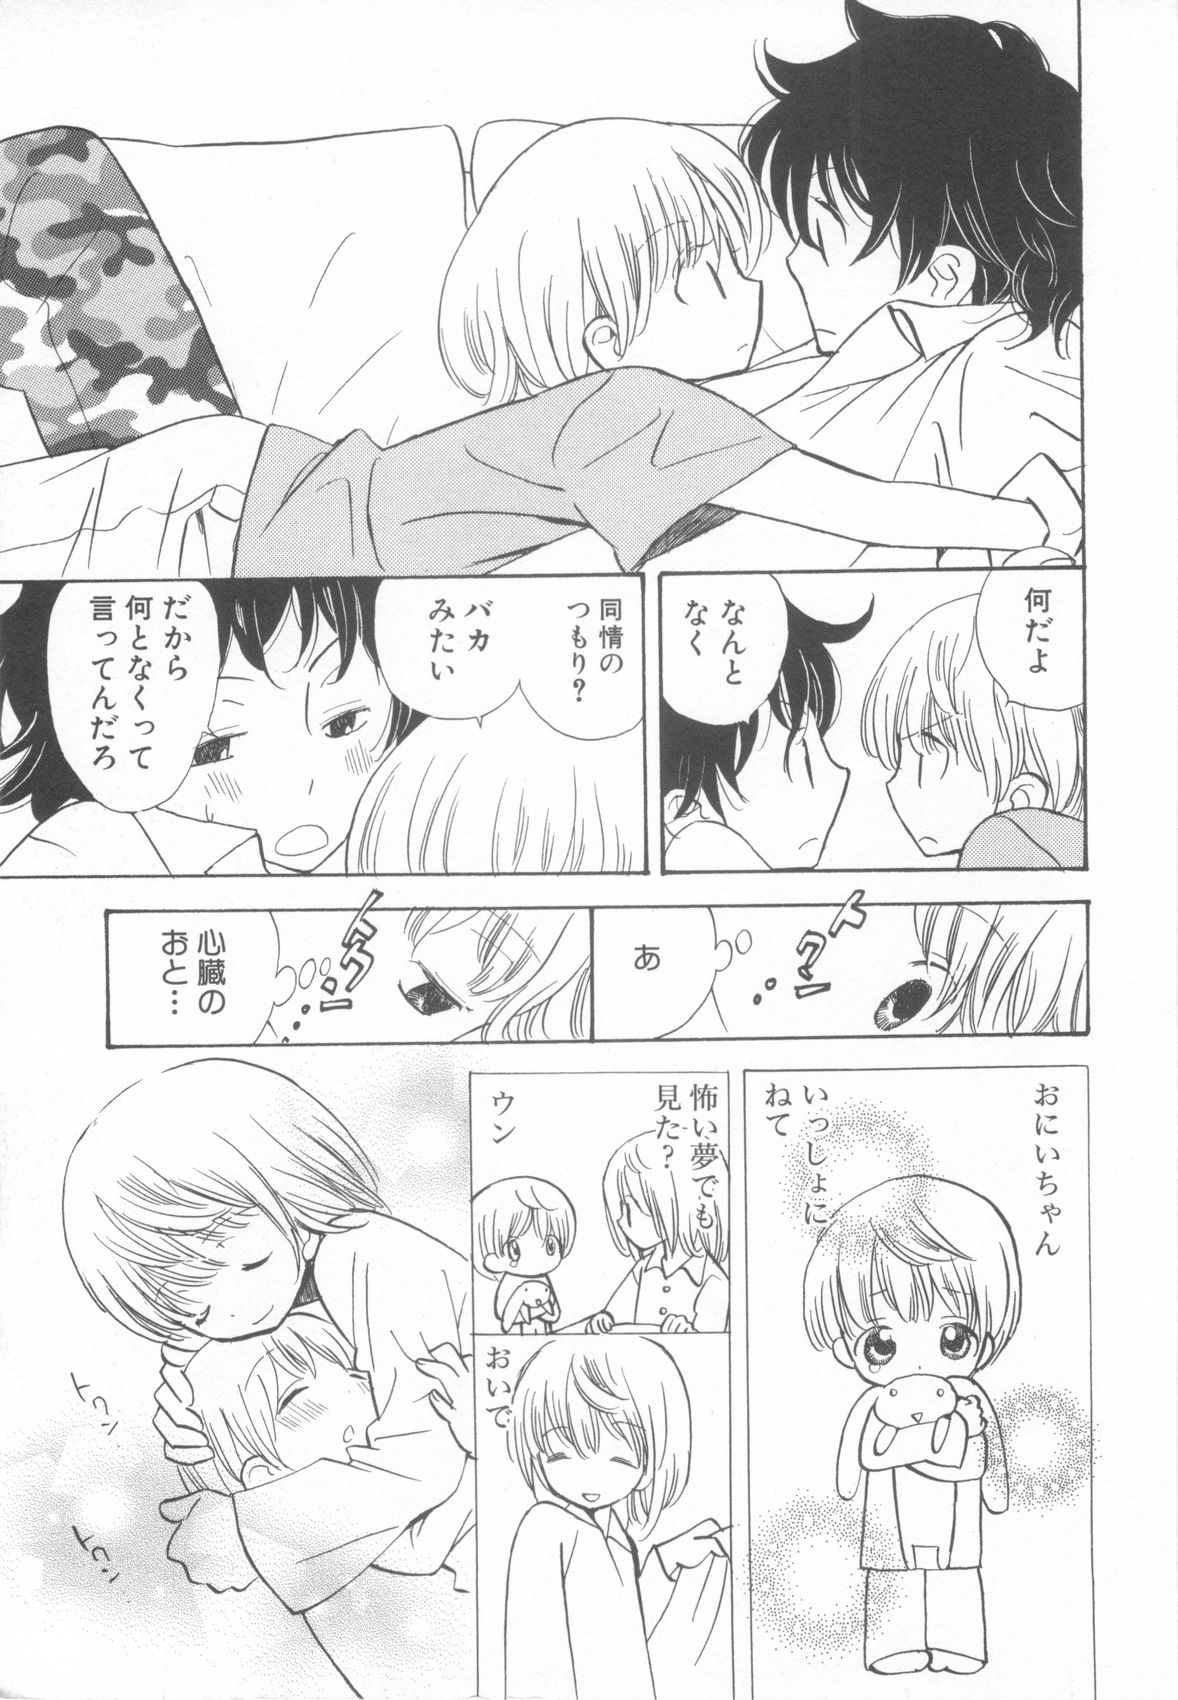 [Anthology] Shota Tama Vol. 3 page 23 full